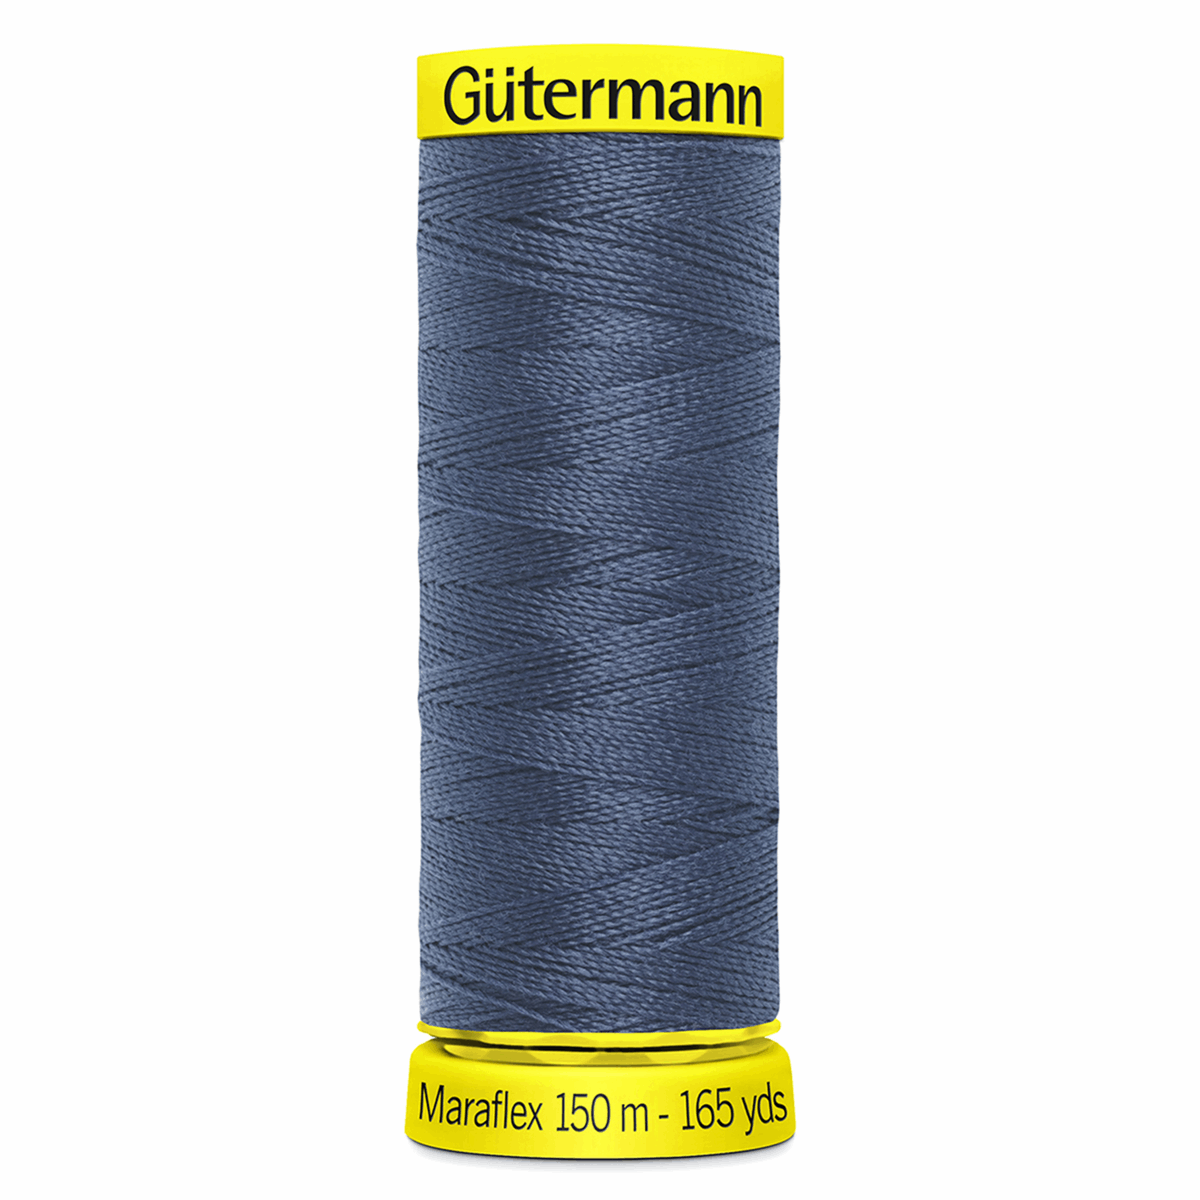 Gutermann Maraflex Elastic Sewing Thread 150m Blue Grey 112